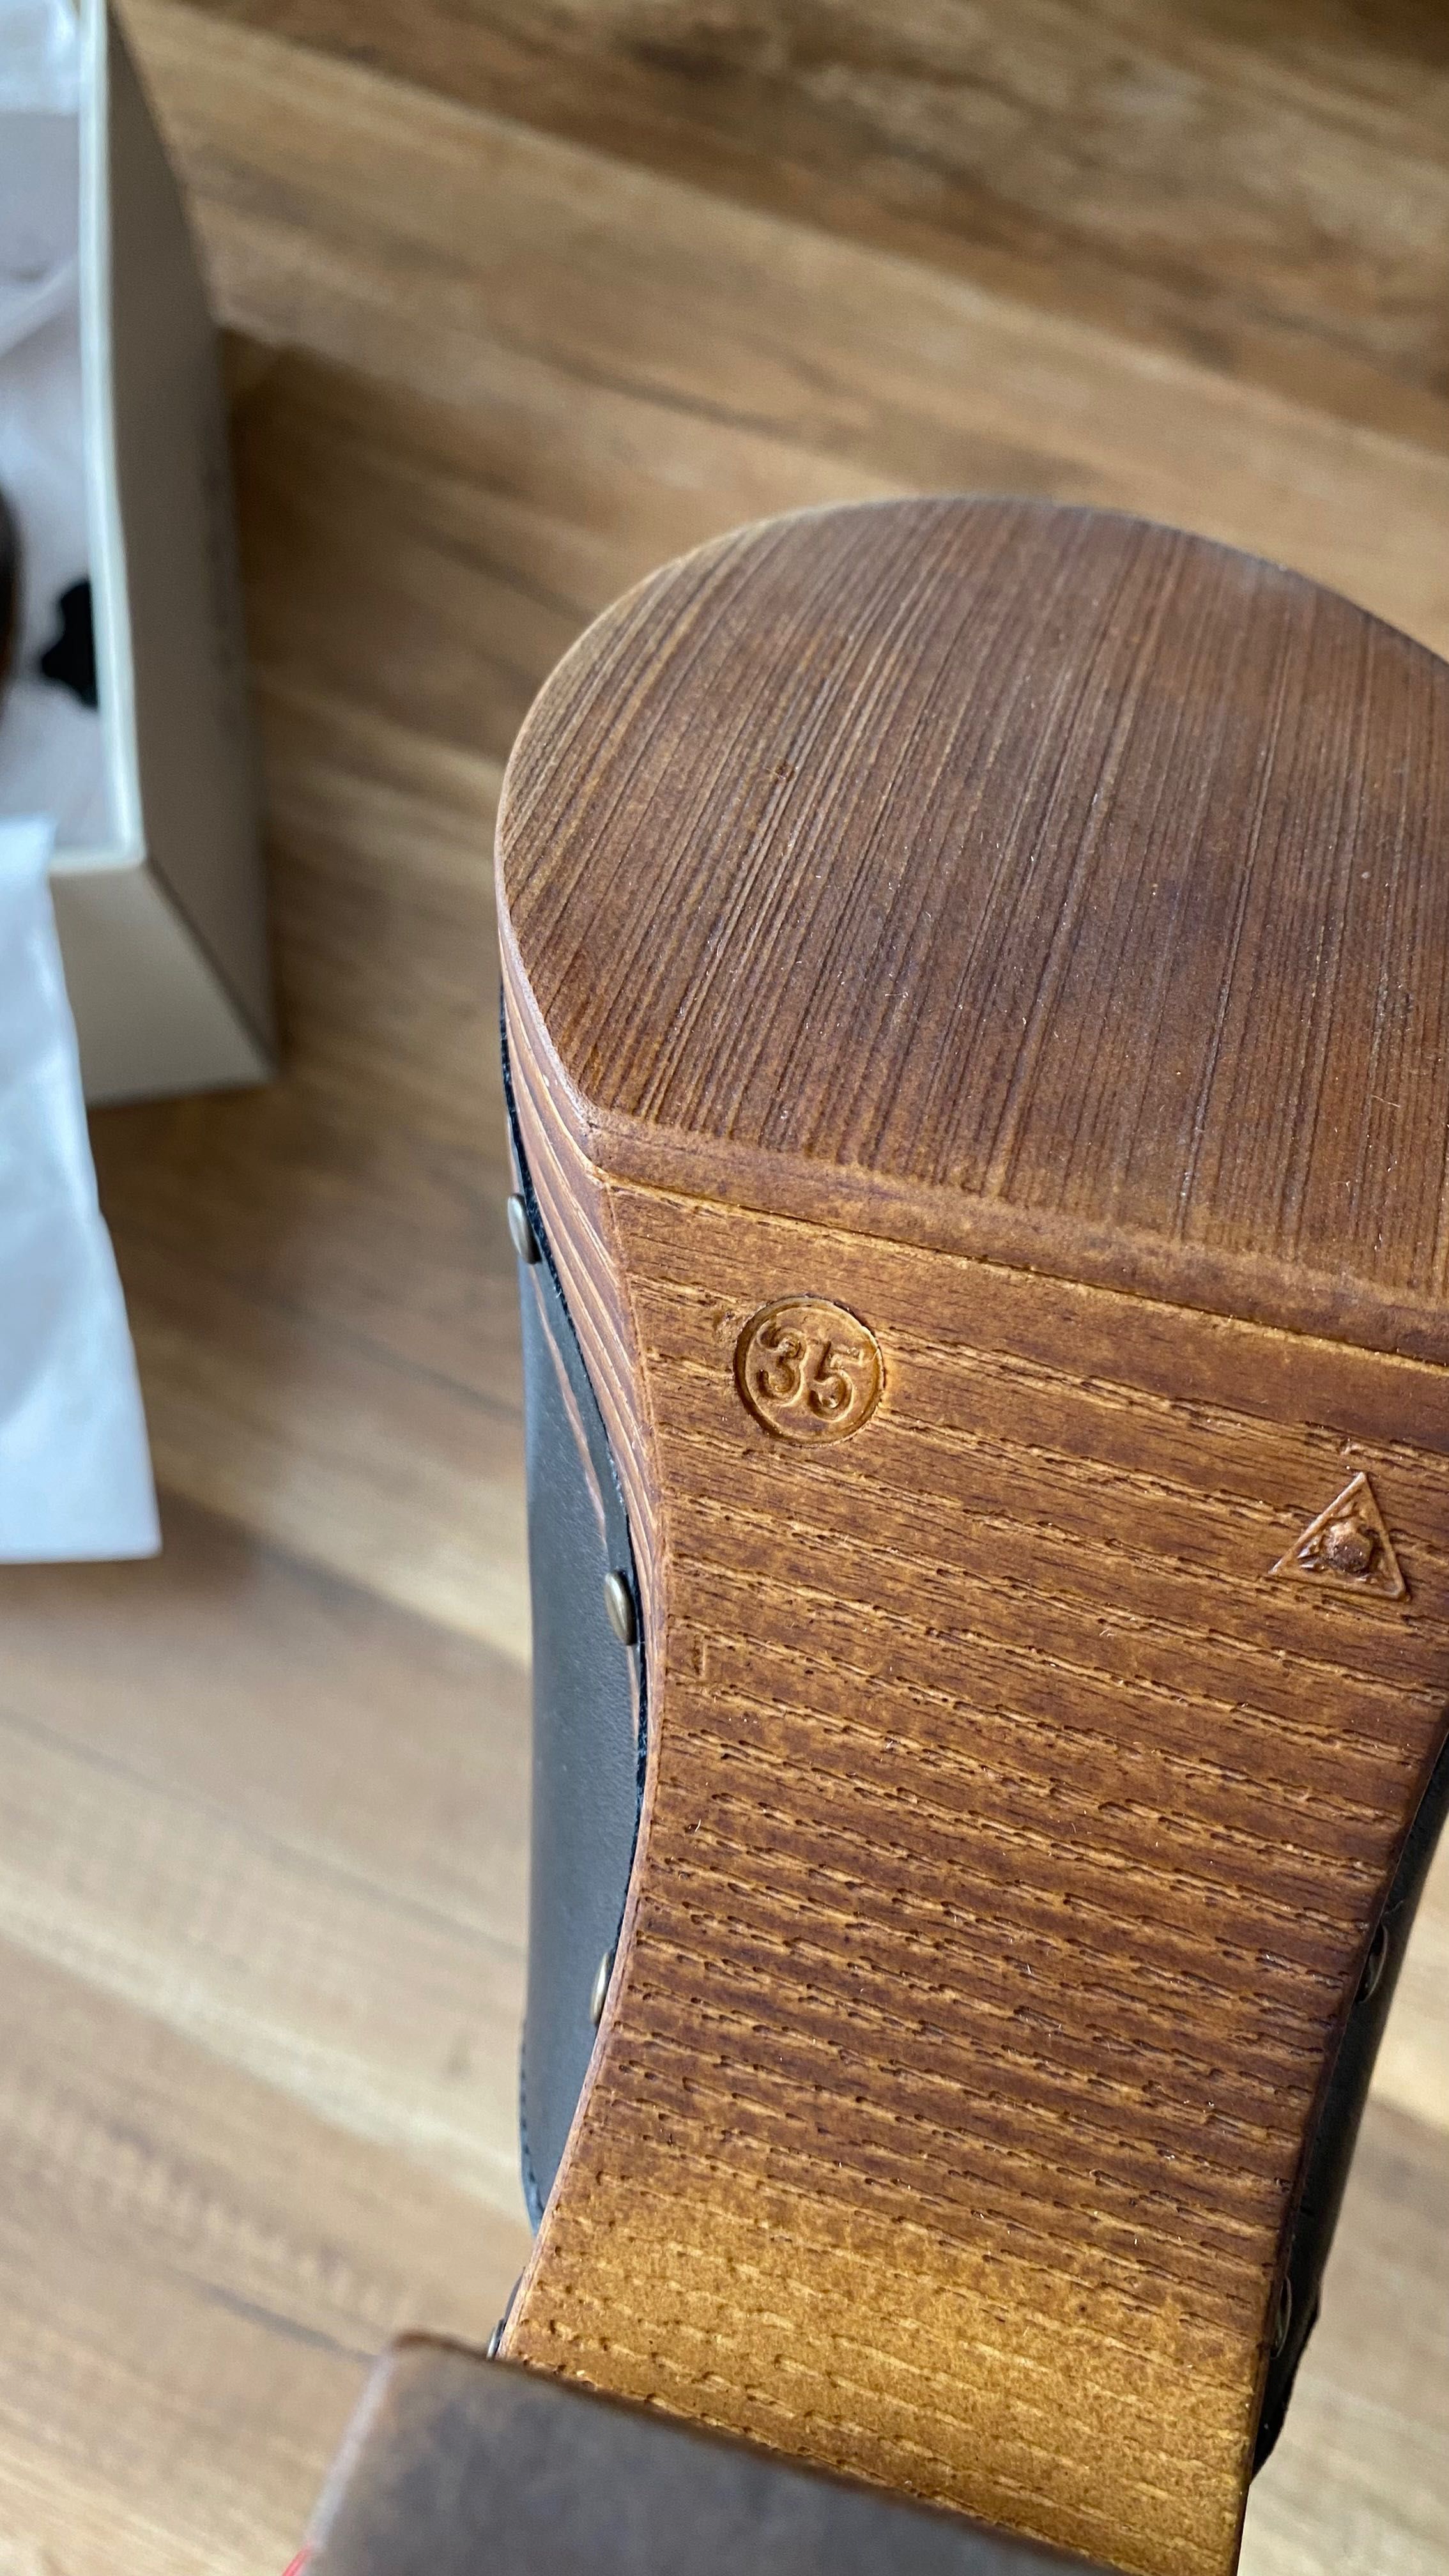 Nowe buty skórzane klapki Lasocki drewniaki z oryginalnym pudełkiem.